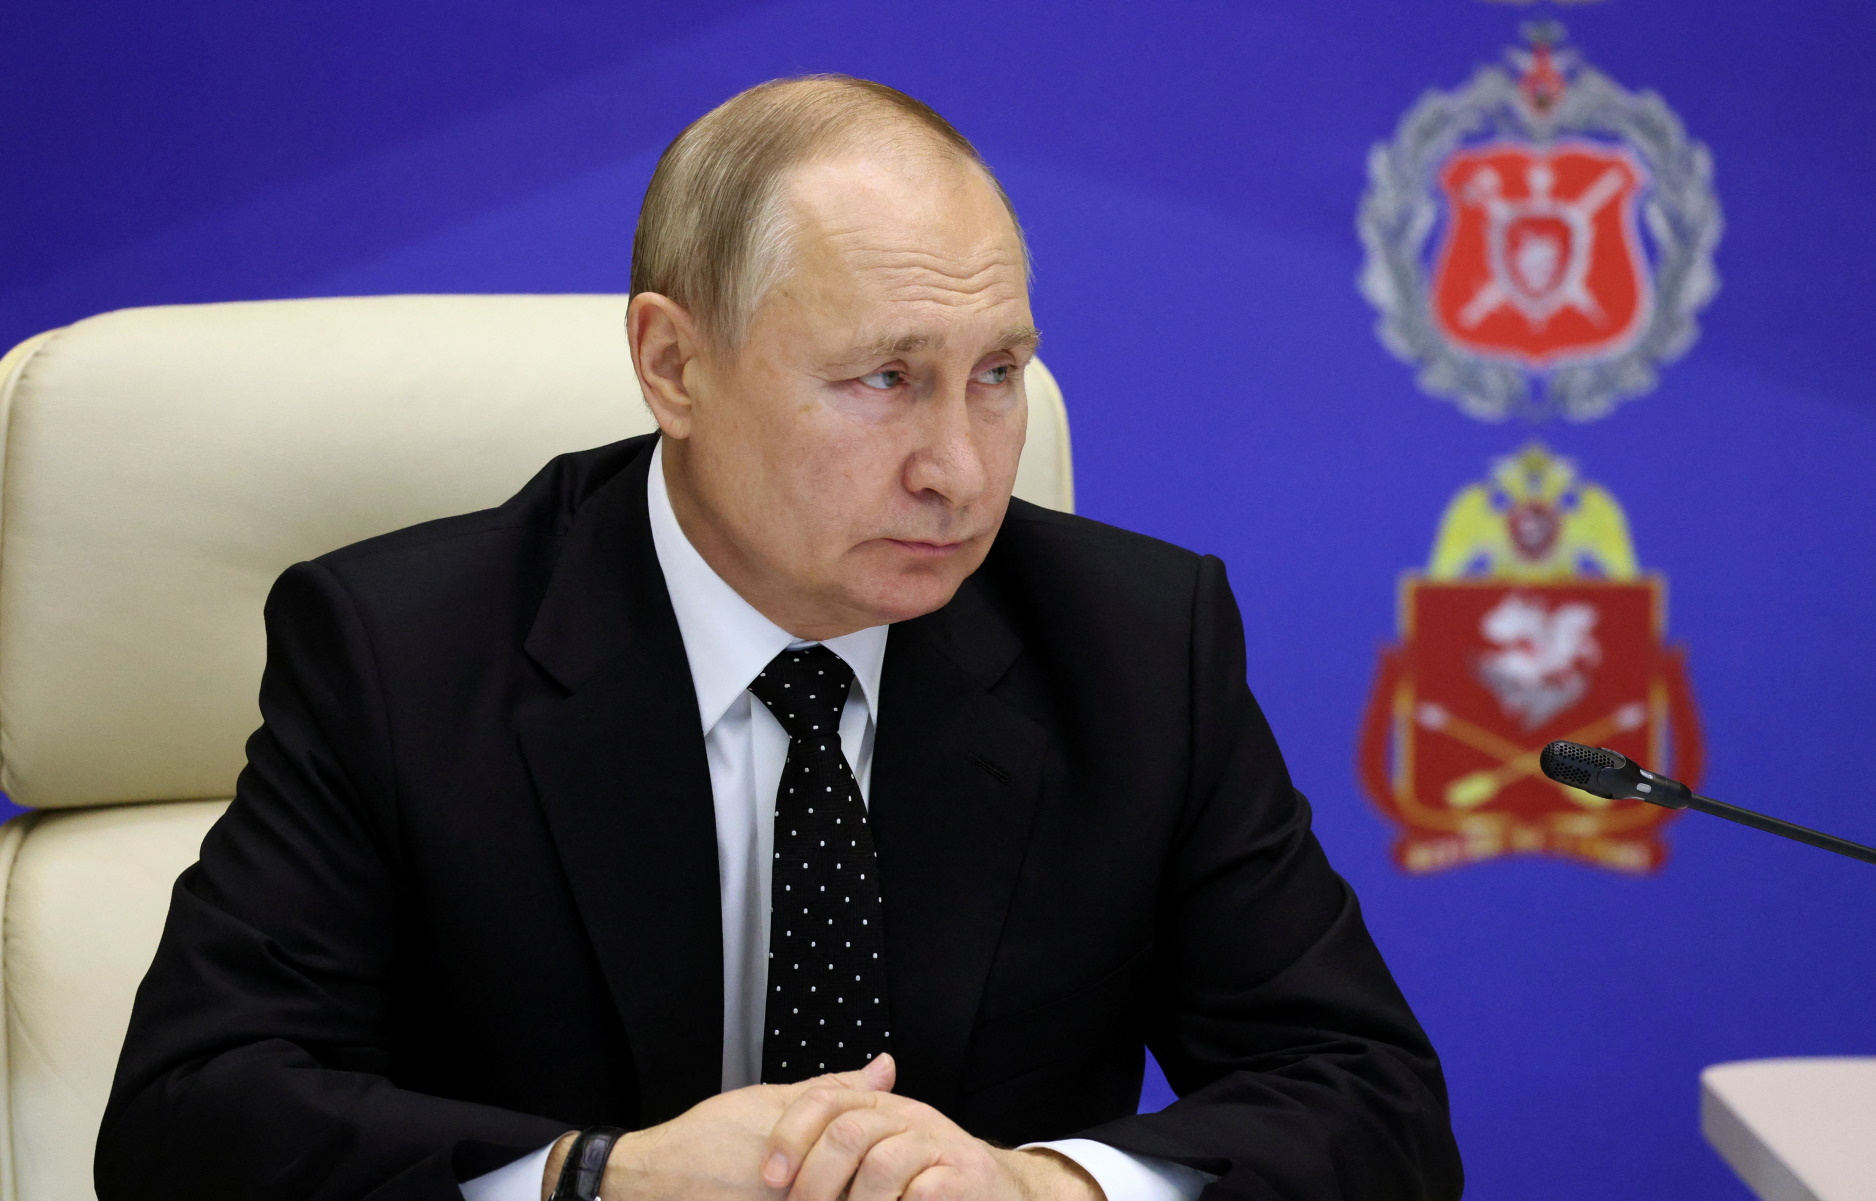 Βλαντιμίρ Πούτιν: Ωμή παραδοχή της «εξαιρετικά δύσκολης» κατάστασης του Ρωσικού στρατού στην Ουκρανία